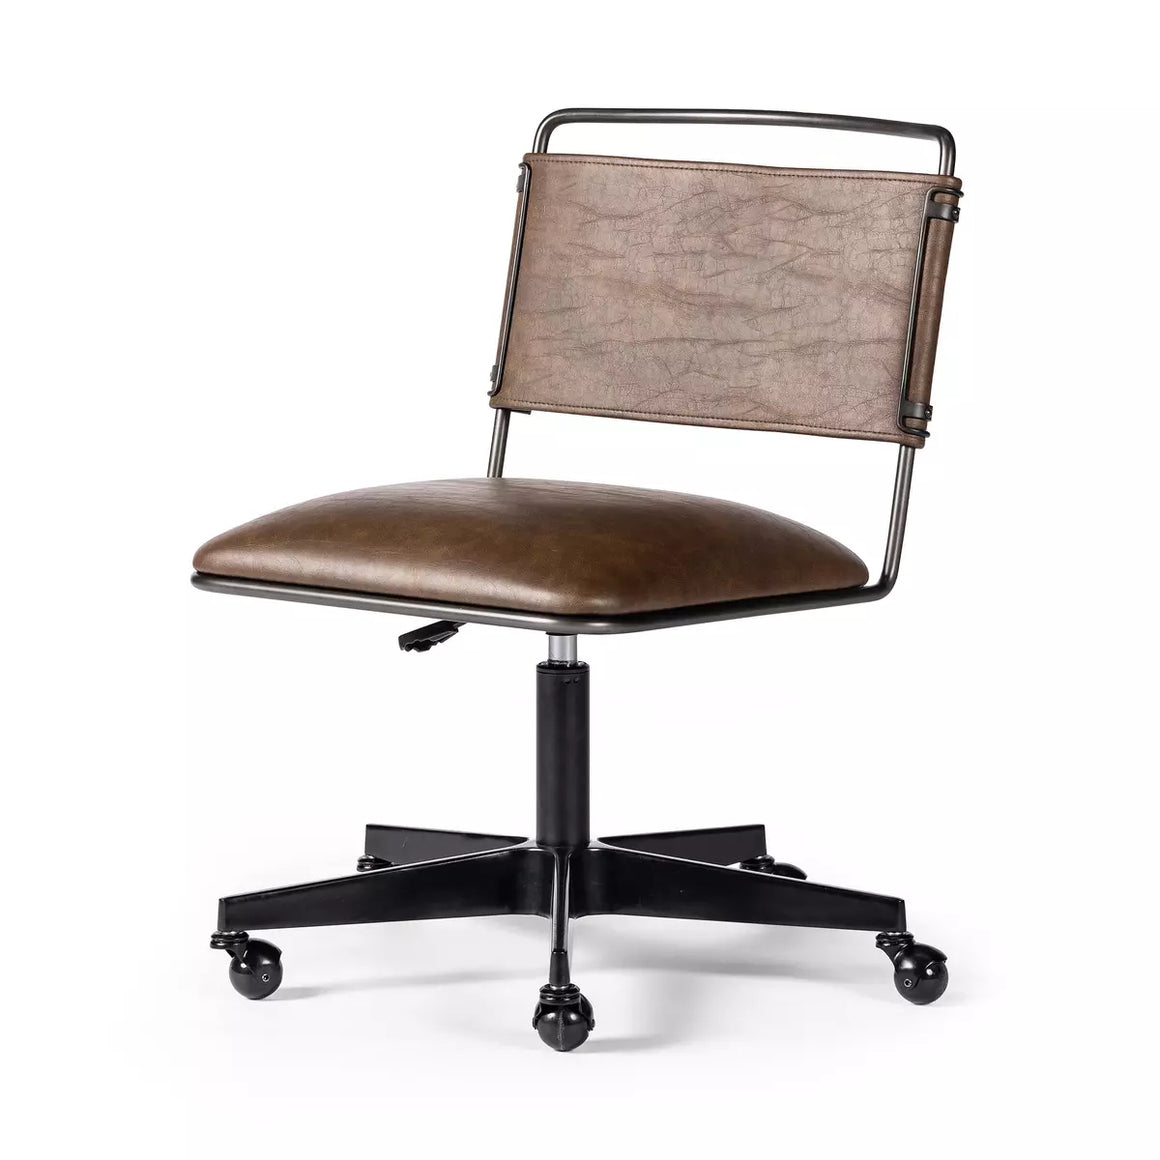 Wharton Desk Chair - Distressed Brown